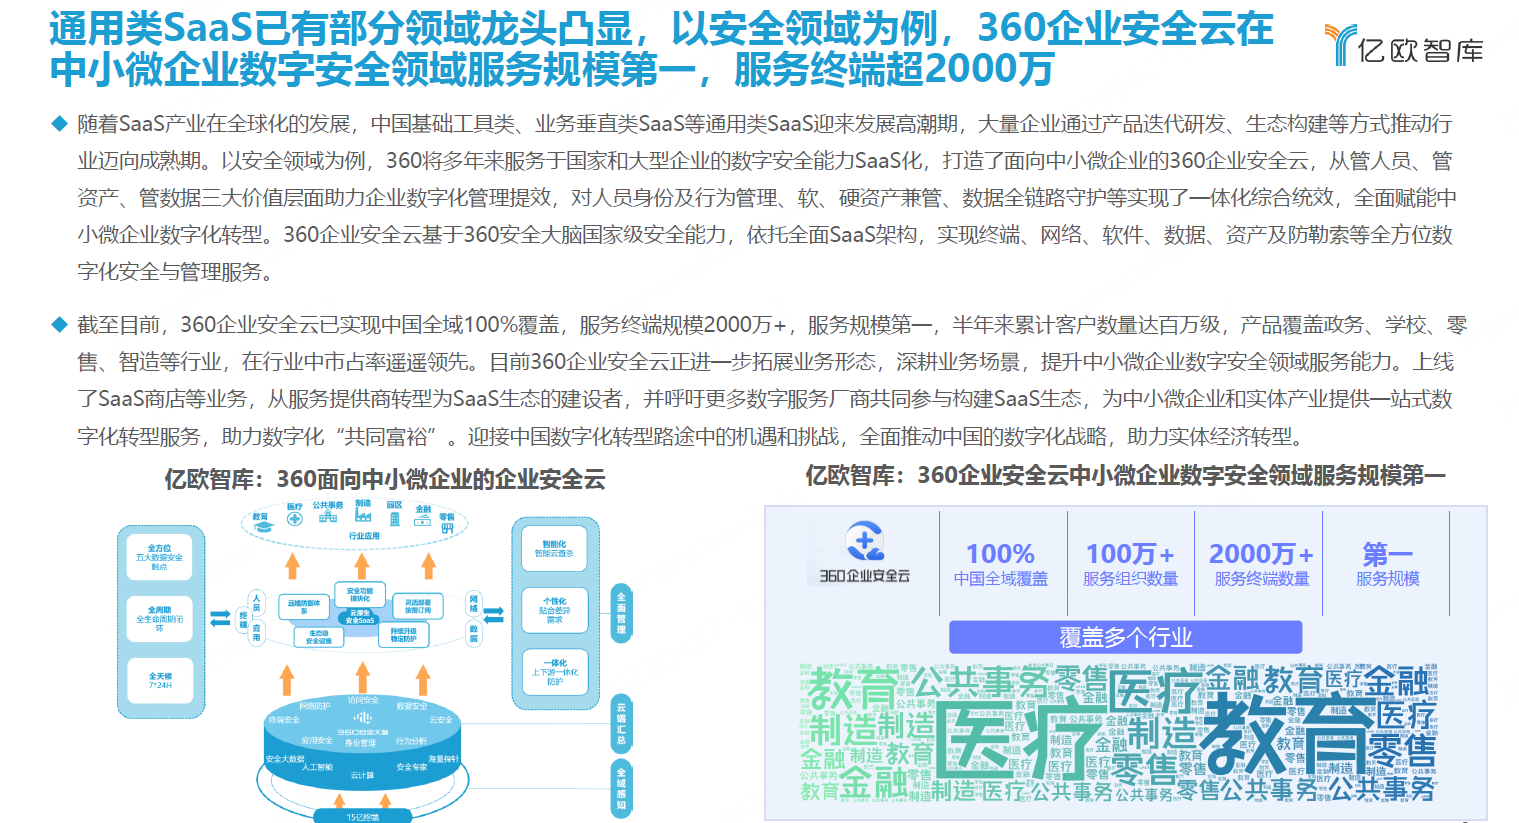 360企业安全云实力入选亿欧智库中国SaaS产业图谱